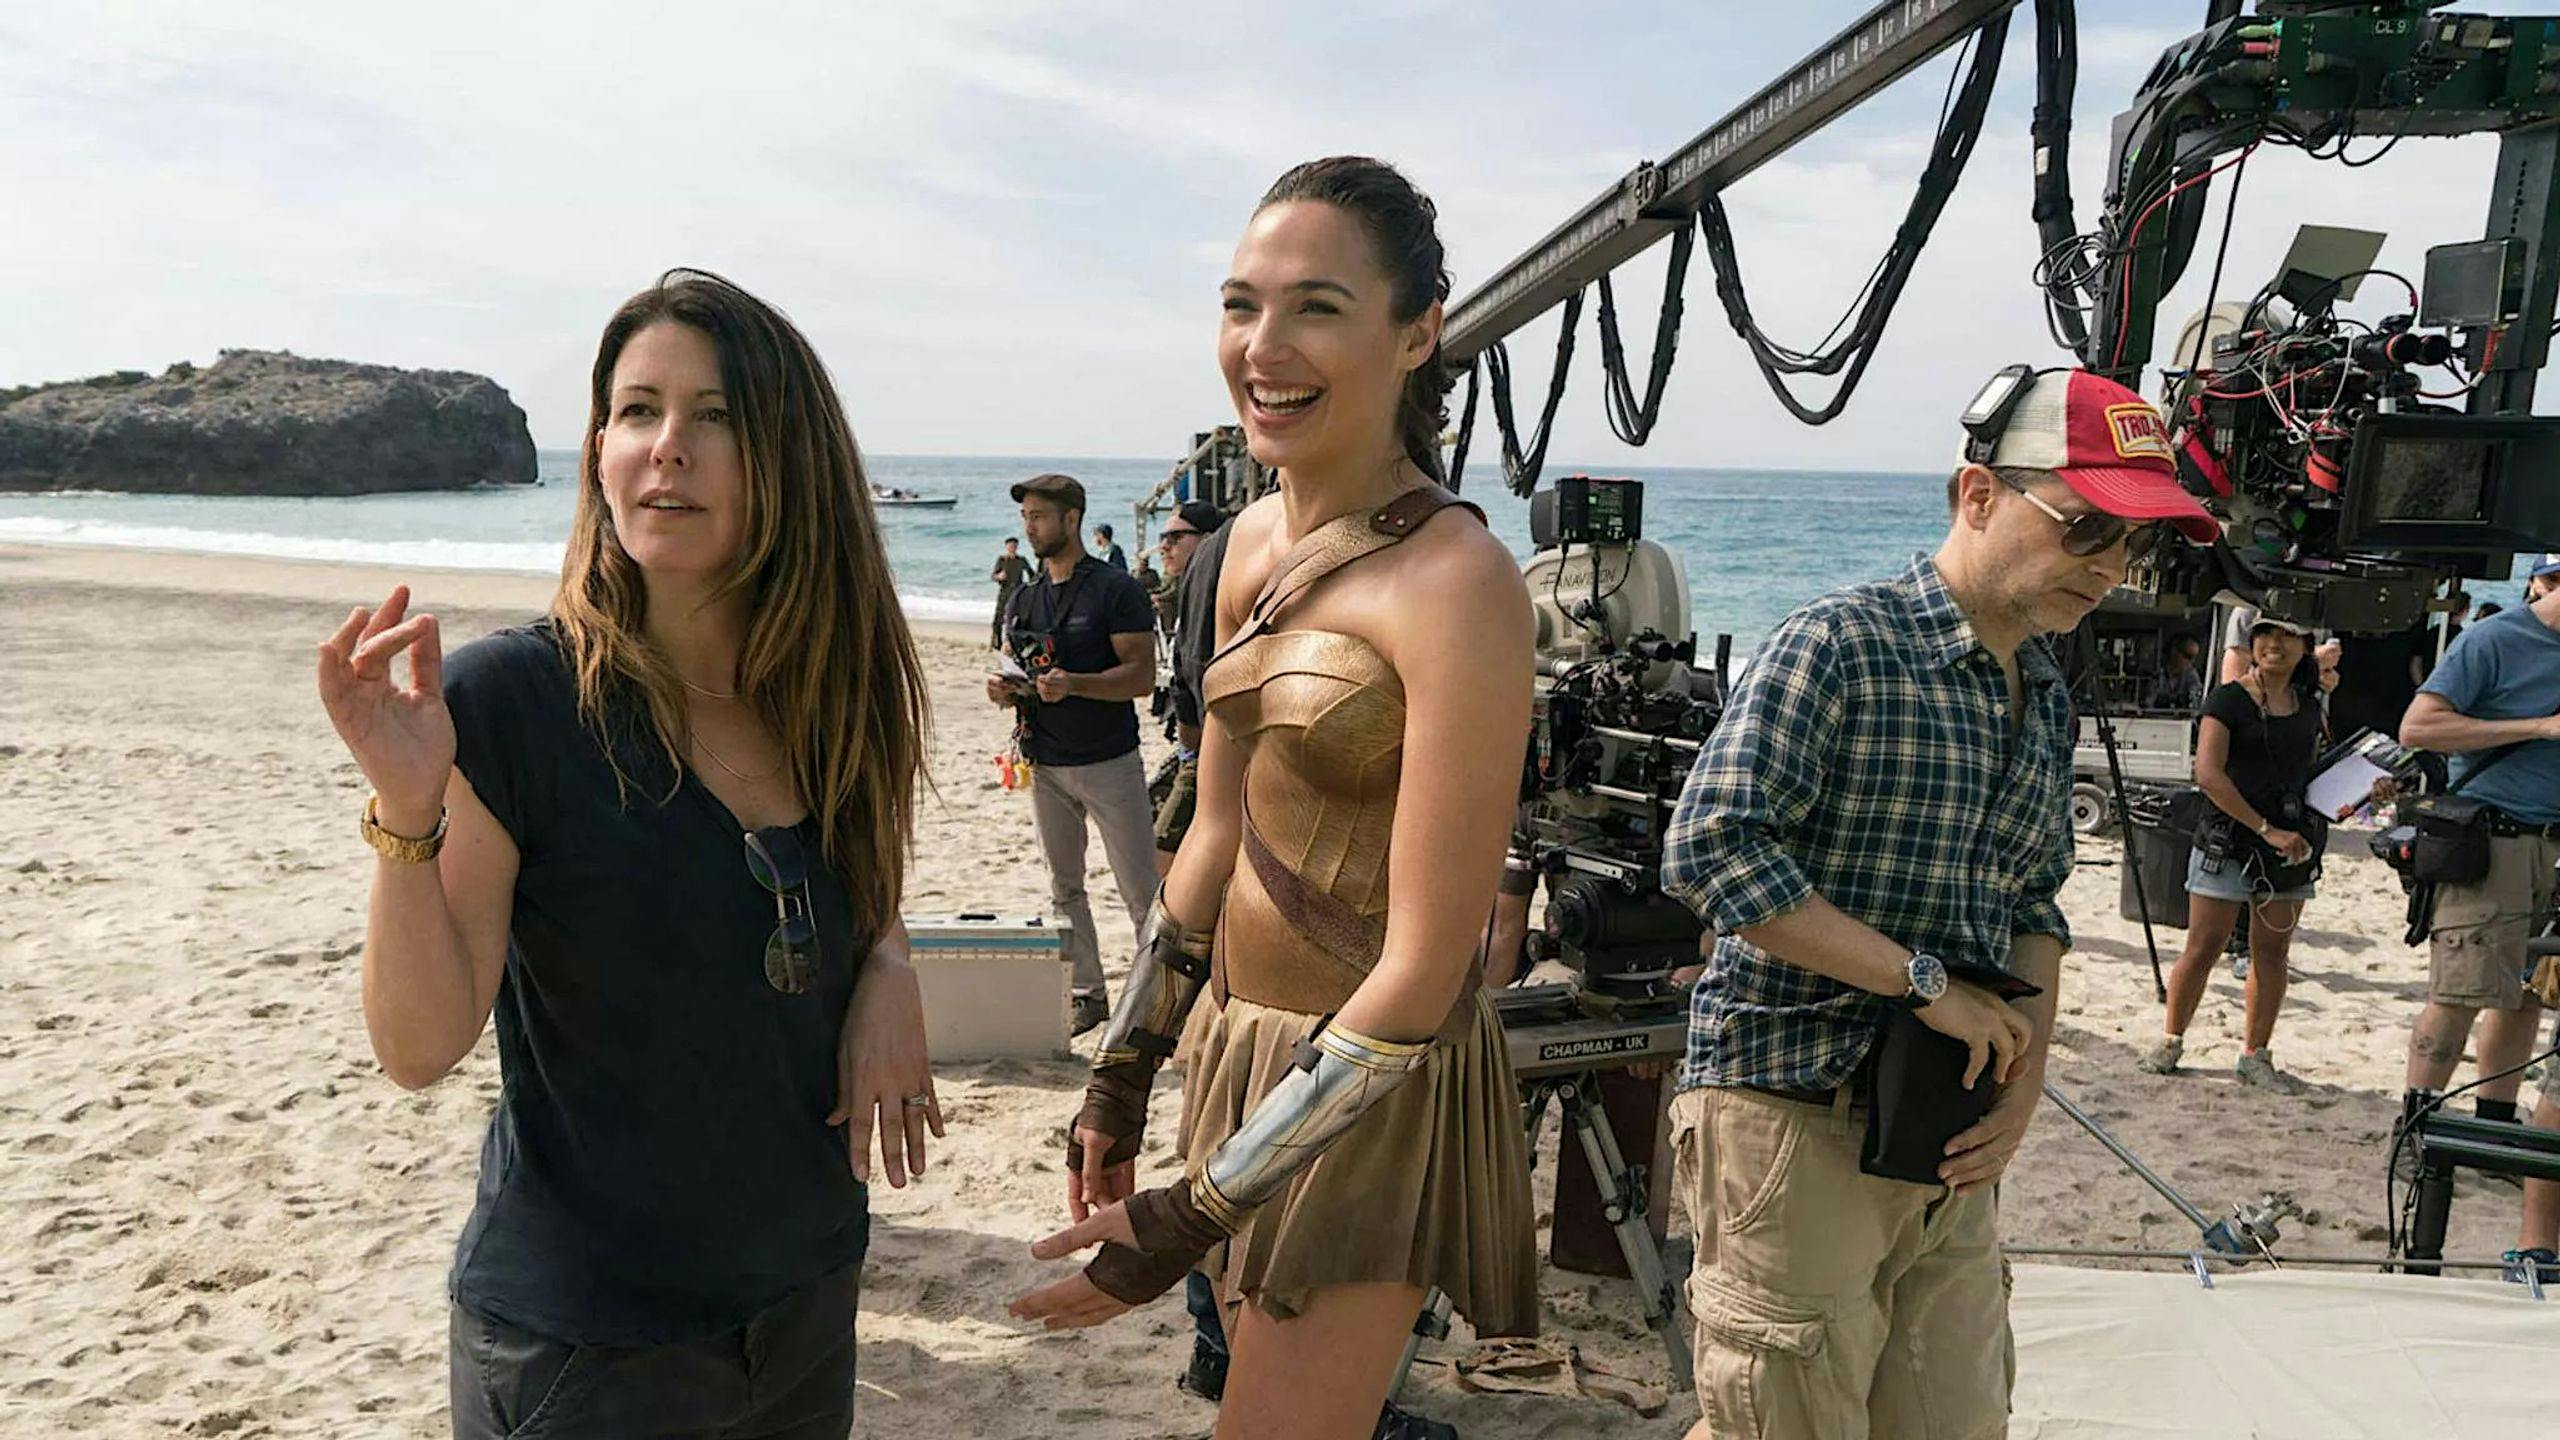 La directora Patty Jenkins y la actriz Gal Gadot, en una imagen del rodaje de 'Wonder Woman' en Canarias